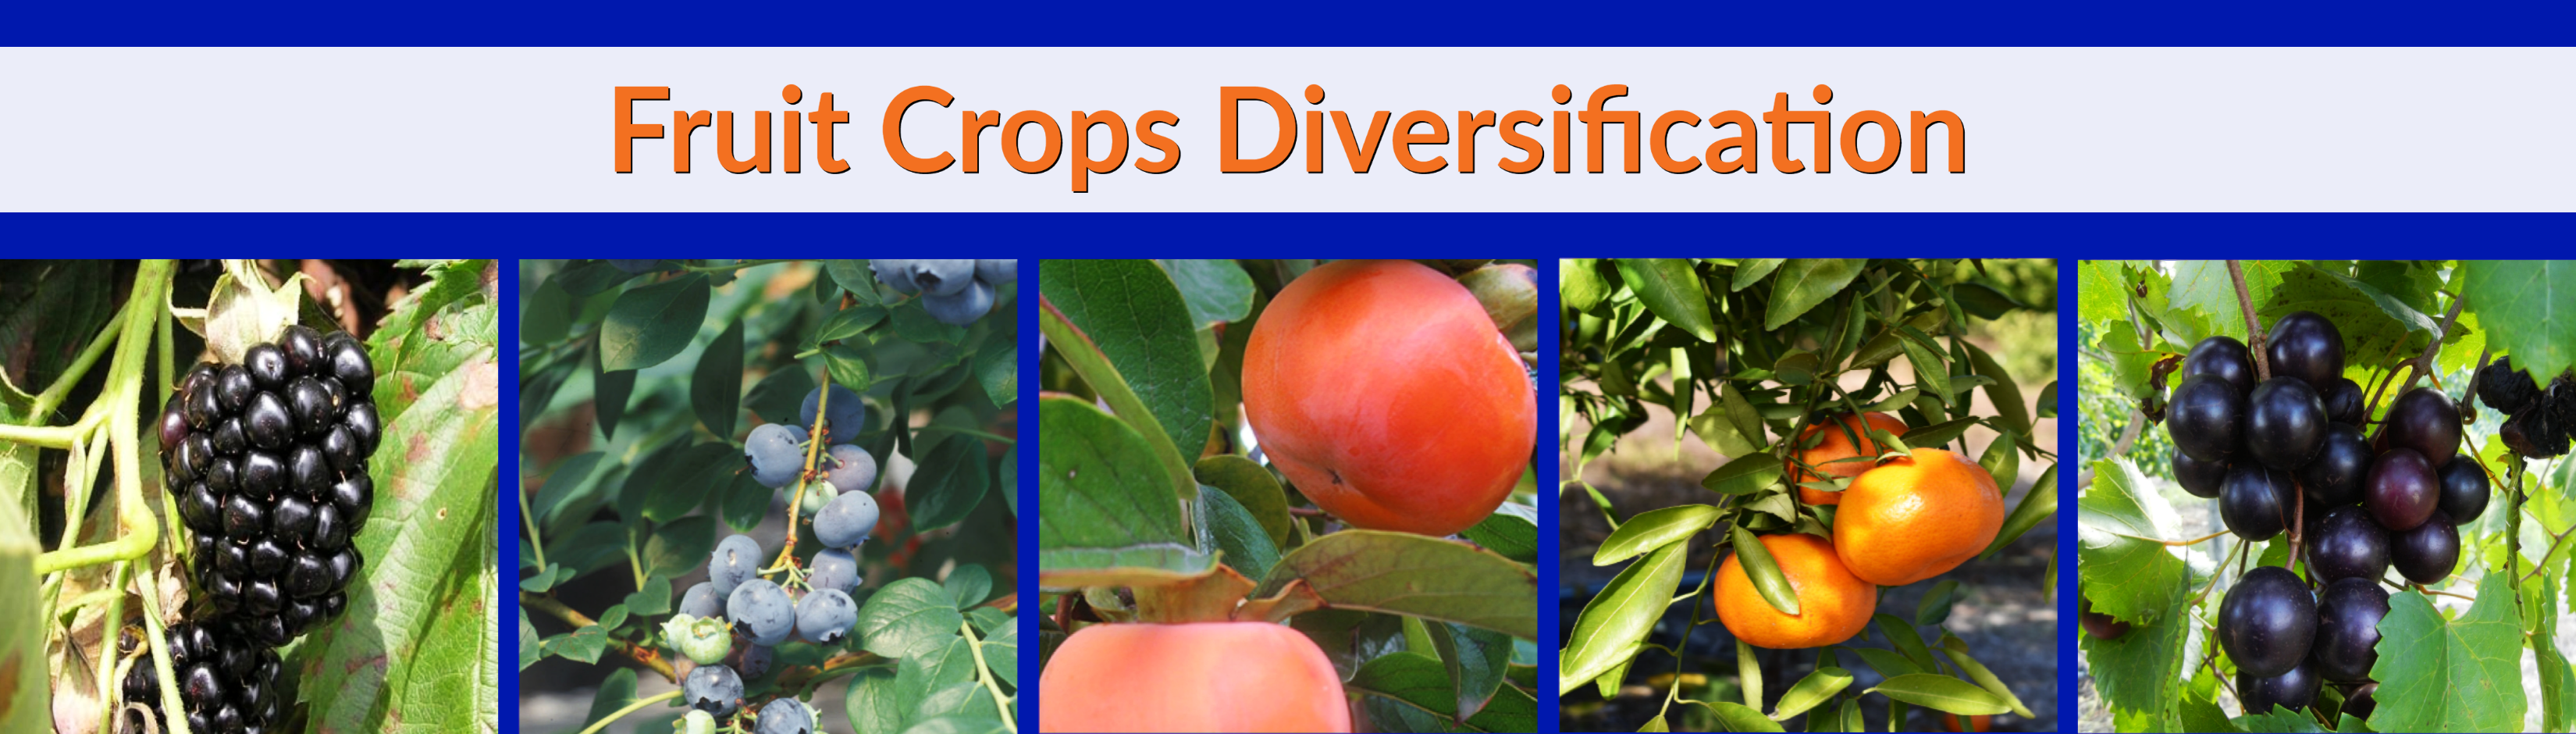 Fruit Crops Diversification